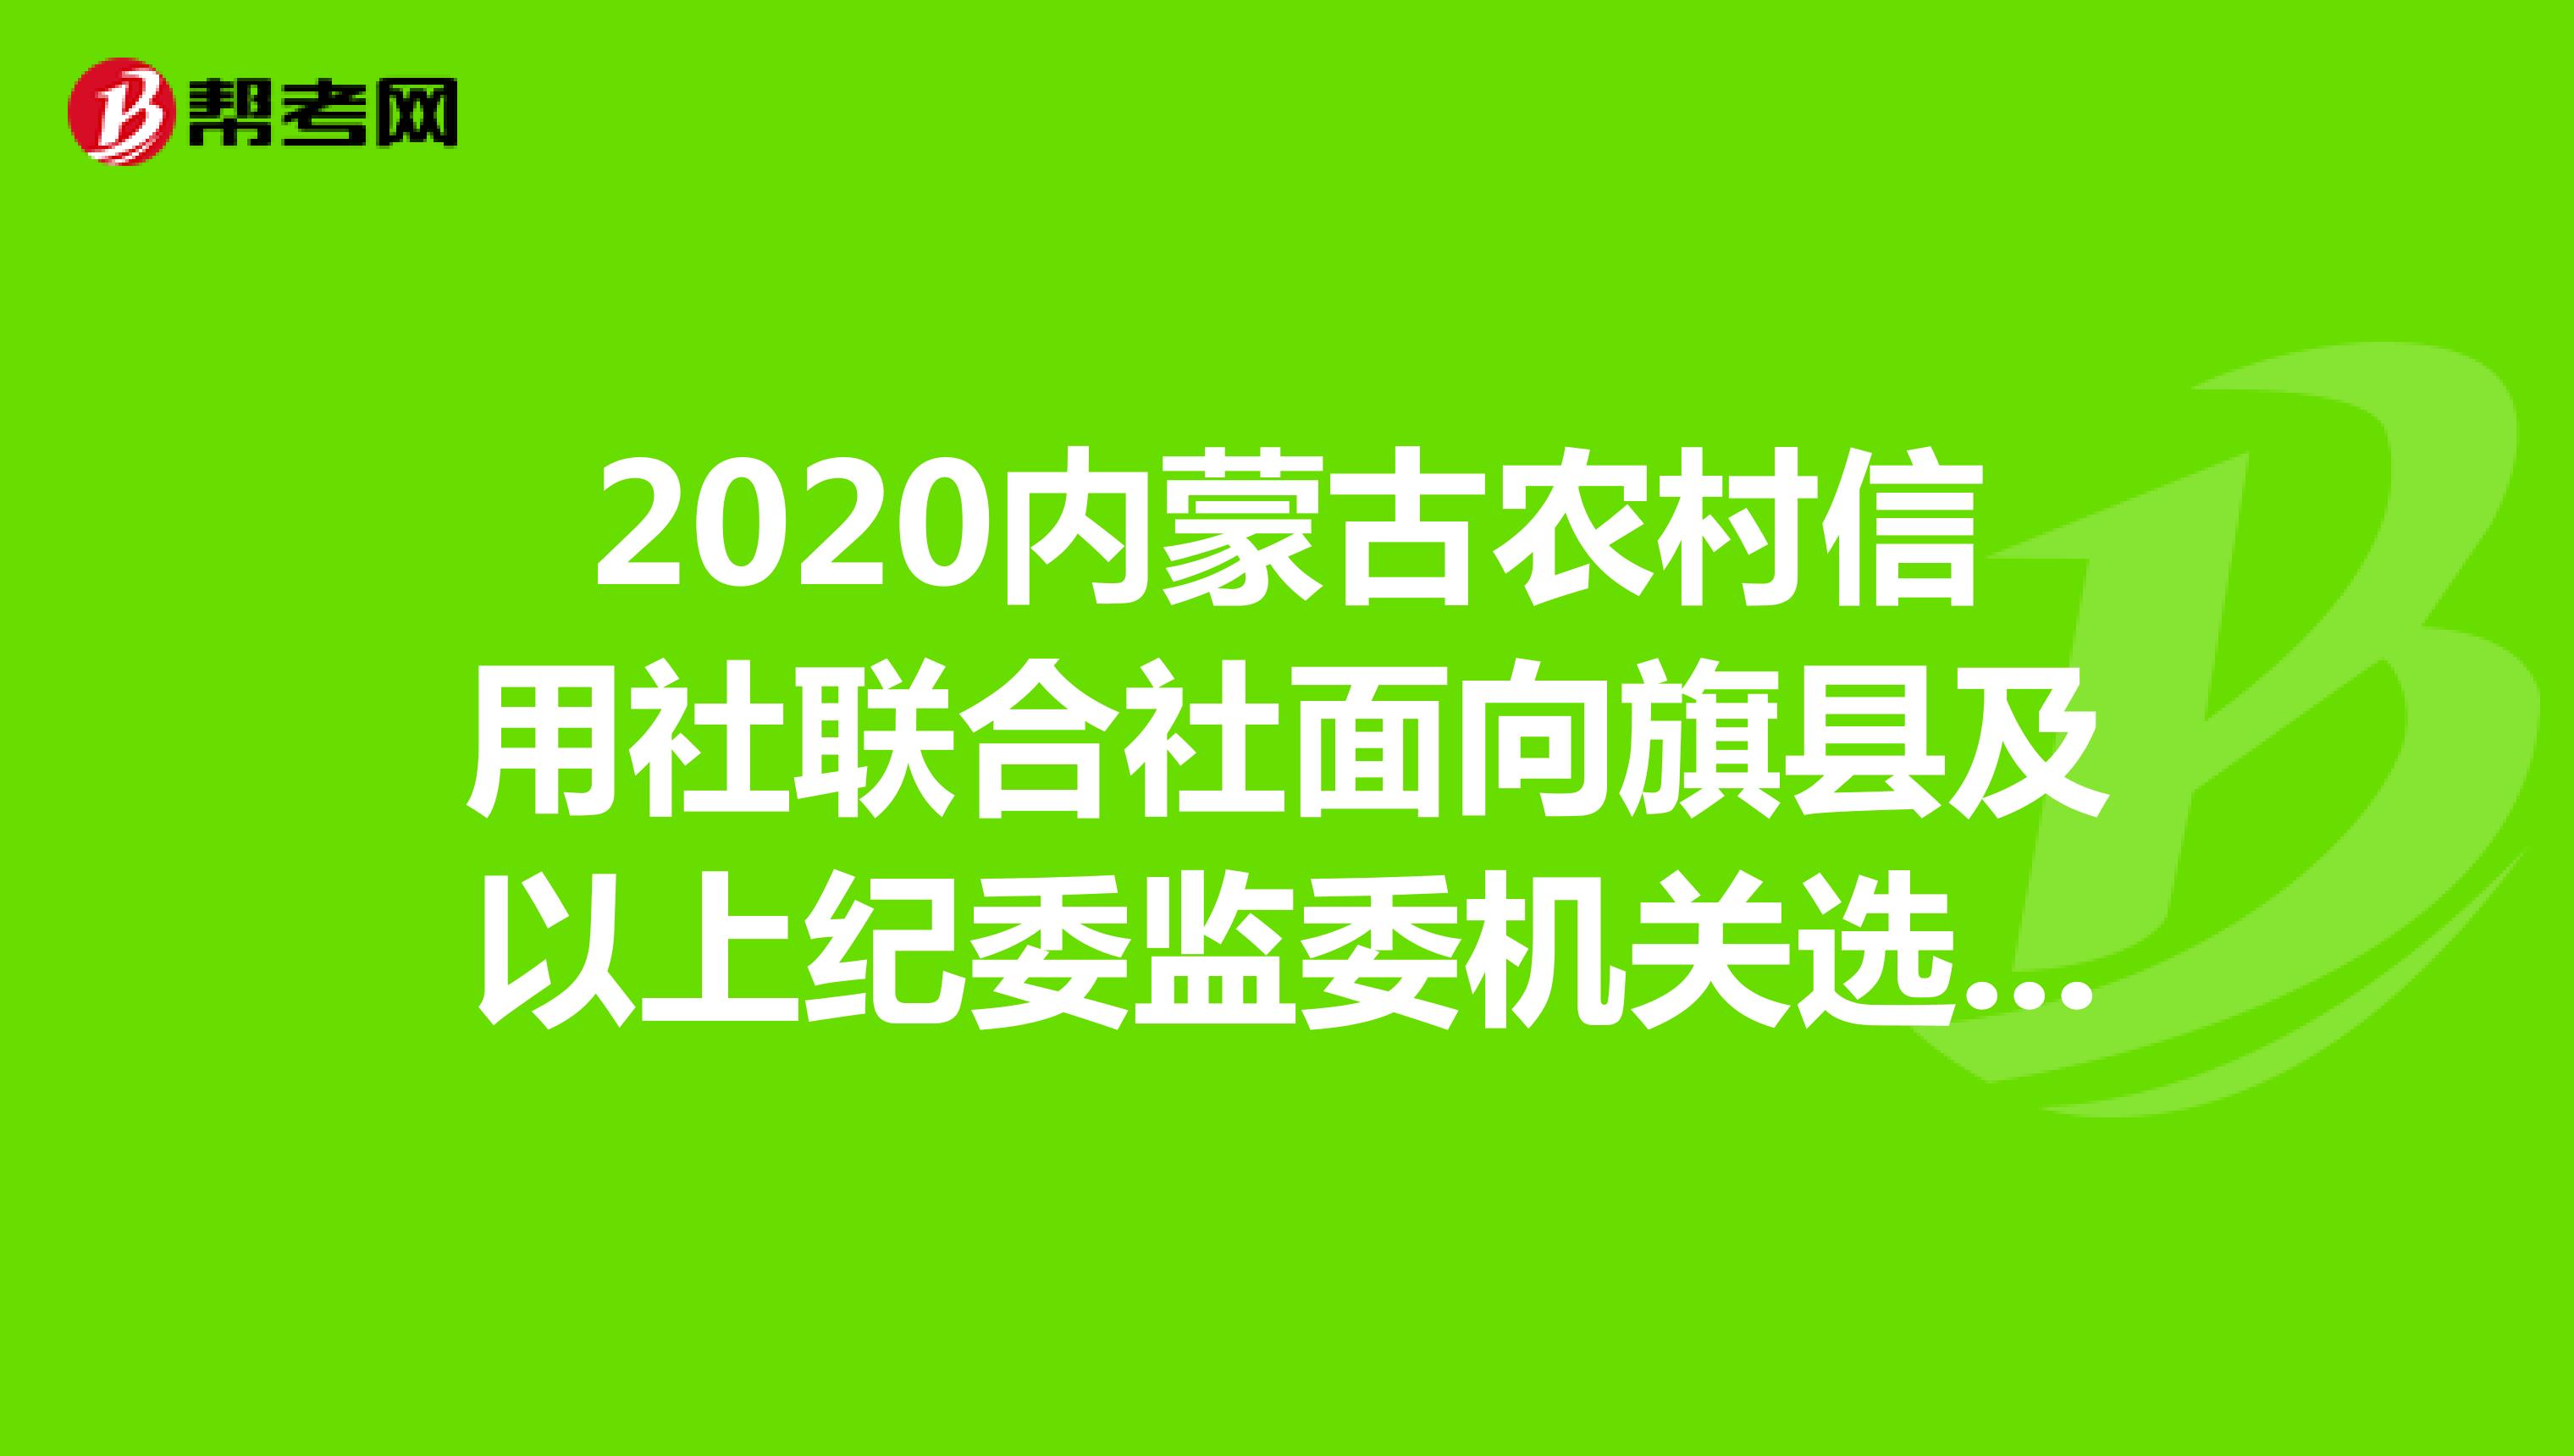 2020内蒙古农村信用社联合社面向旗县及以上纪委监委机关选聘13名工作人员公告